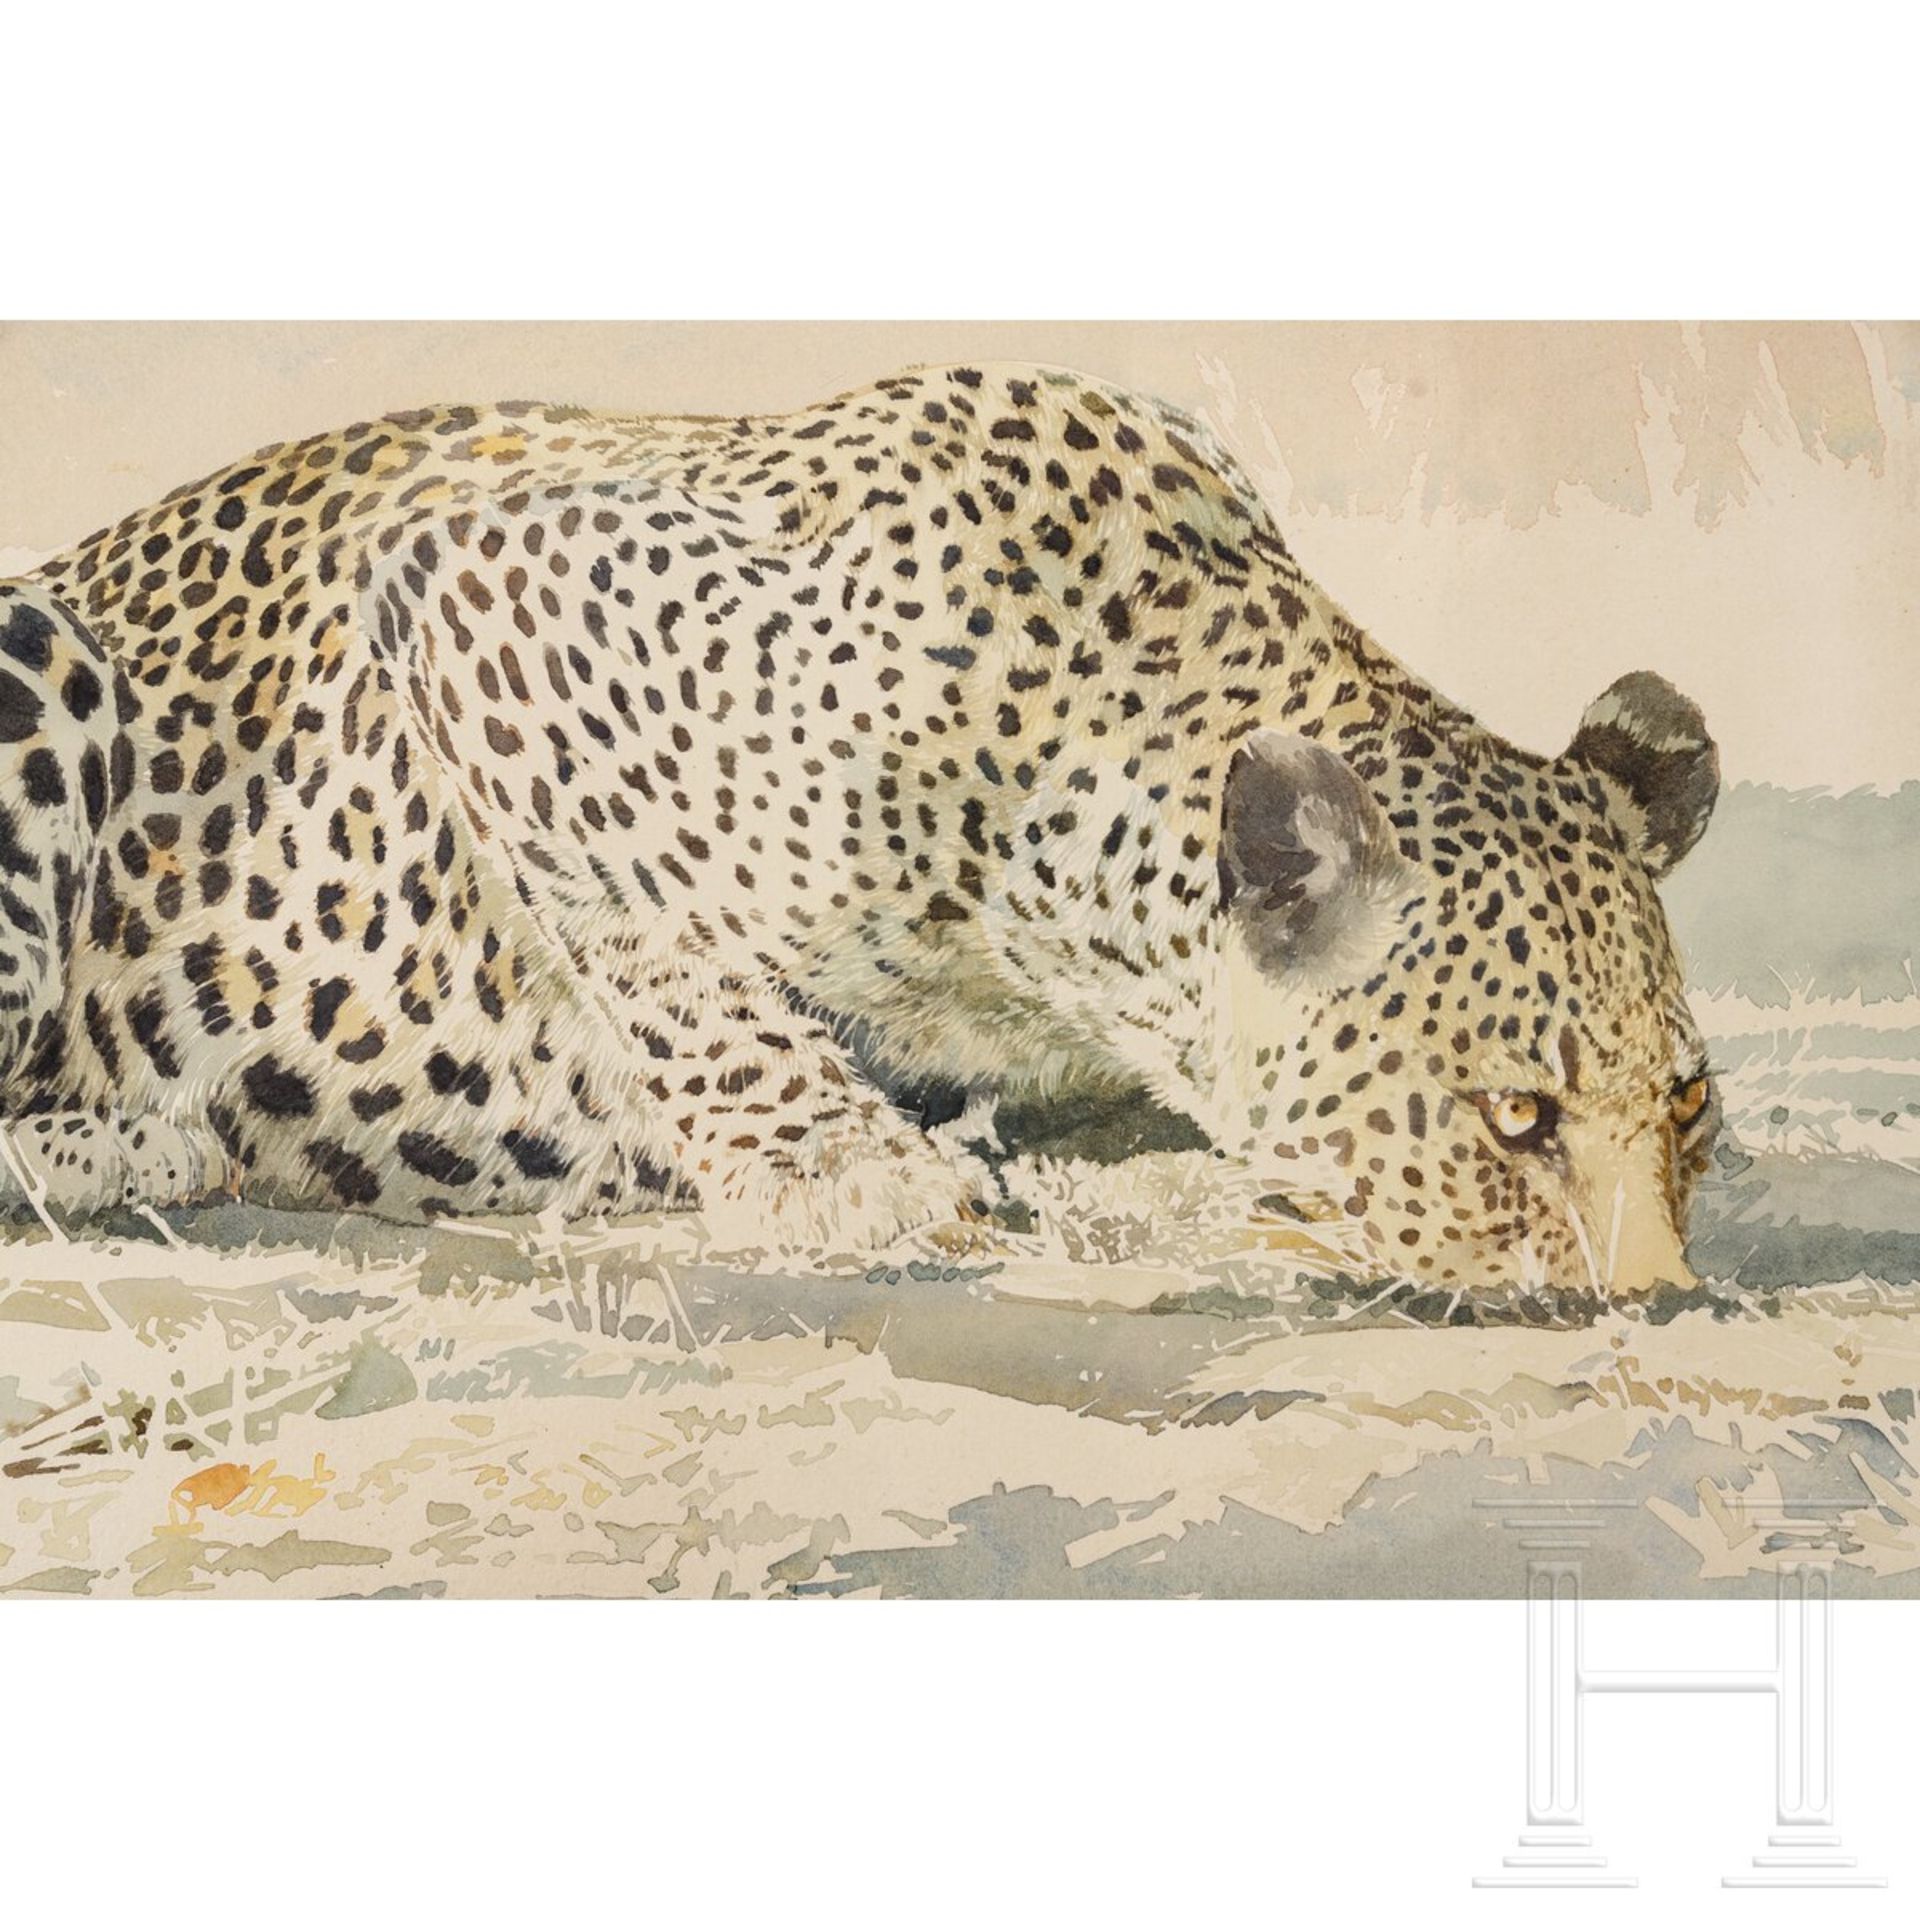 Leigh Voight, "Leopard drinking", Südafrika, datiert 1997 - Image 2 of 3